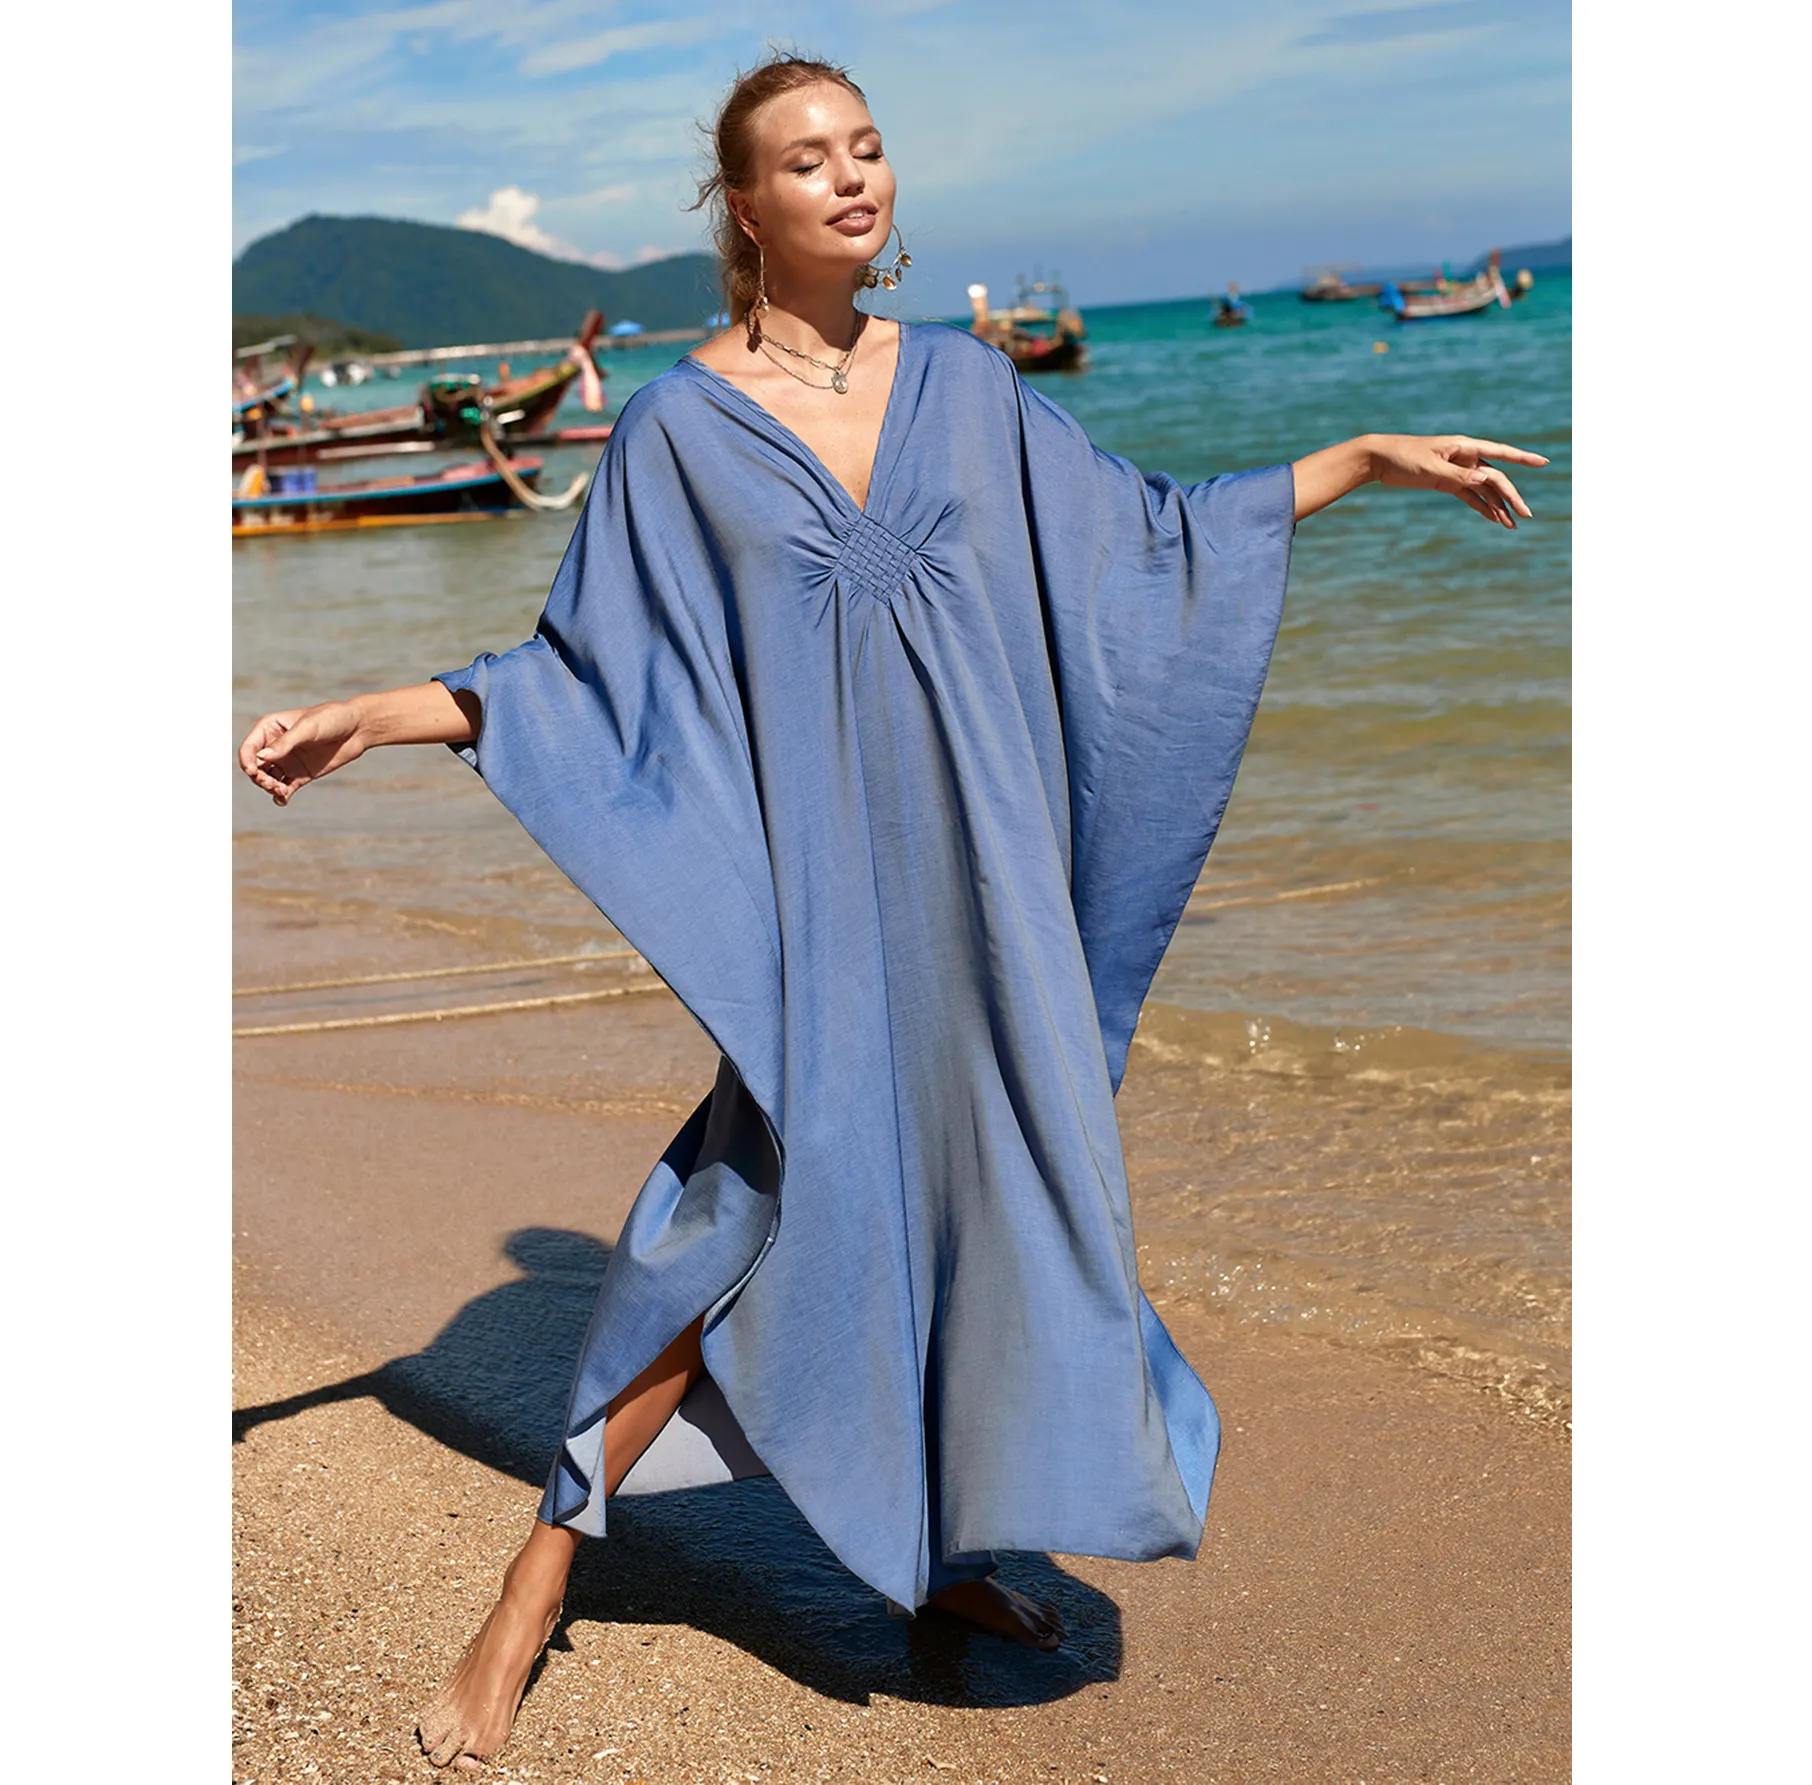 Atacado pareo sarongue praia vestido capa para cobrir praia bali thai sarongs